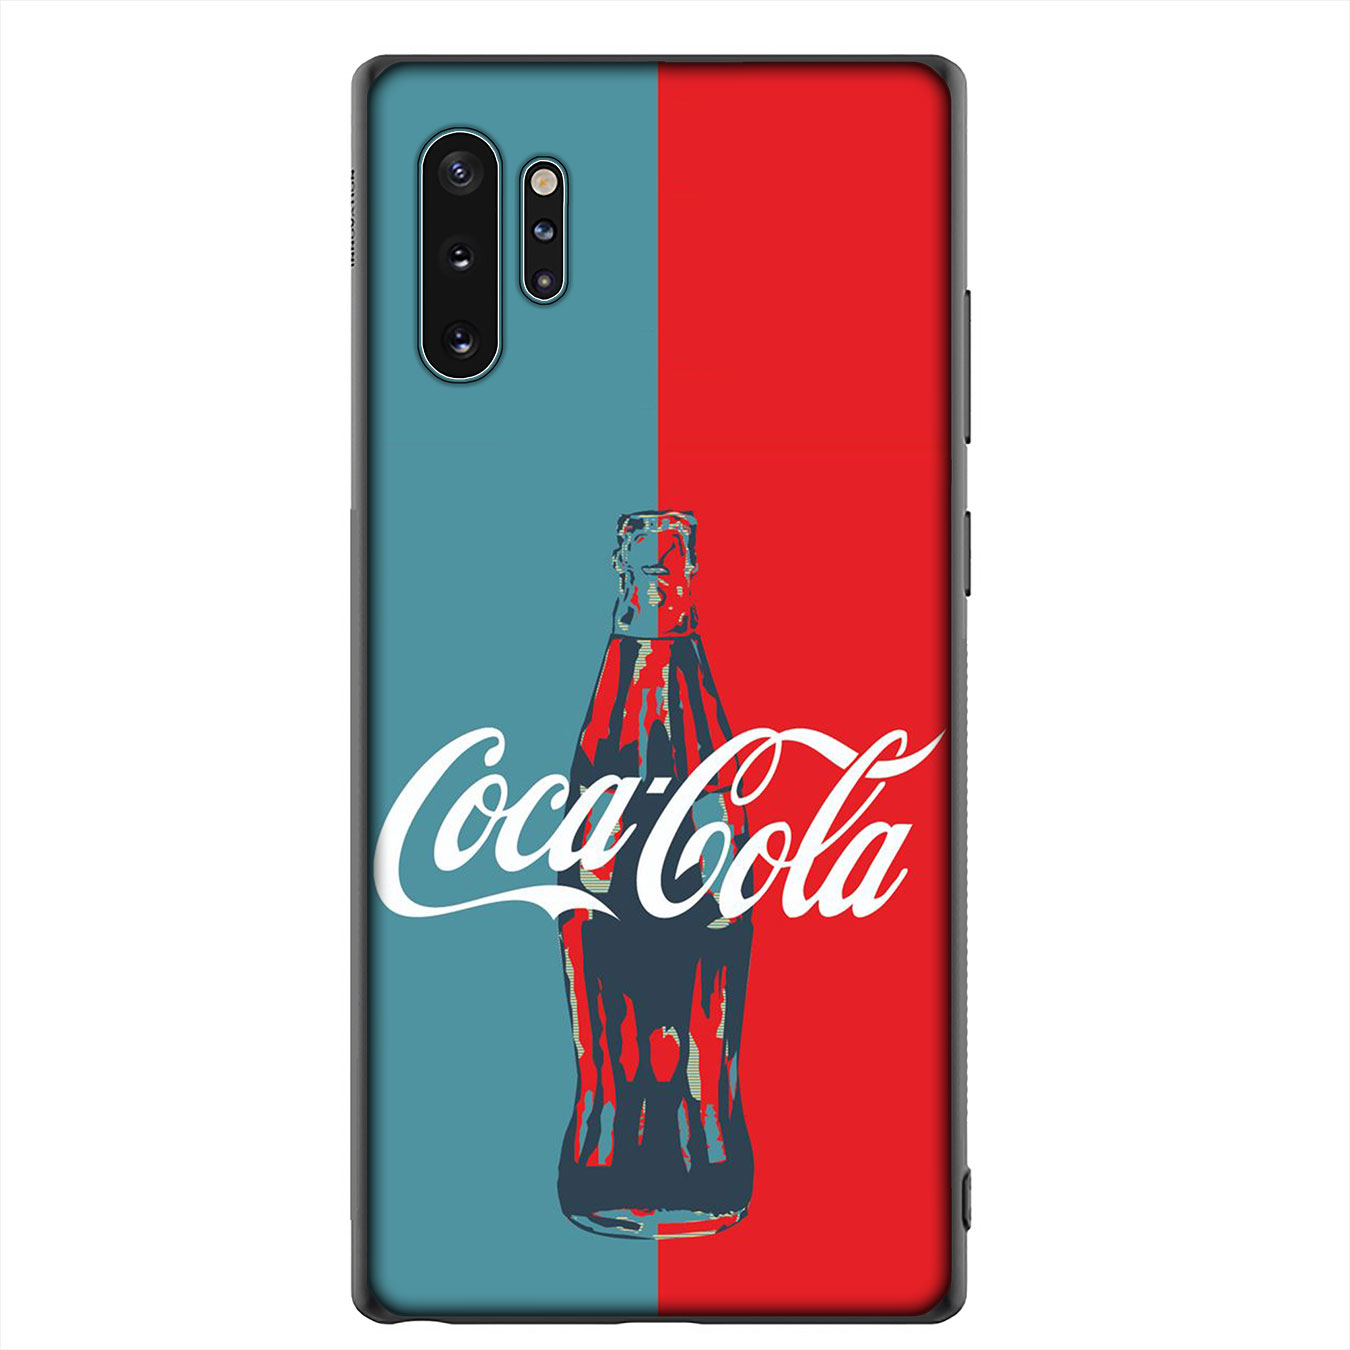 Huawei P30 Pro Lite Y6 Y7 Y9 Prime 2019 2018 Y9Prime Phone Case Soft Silicone Casing B102 Coca Cola Coke S